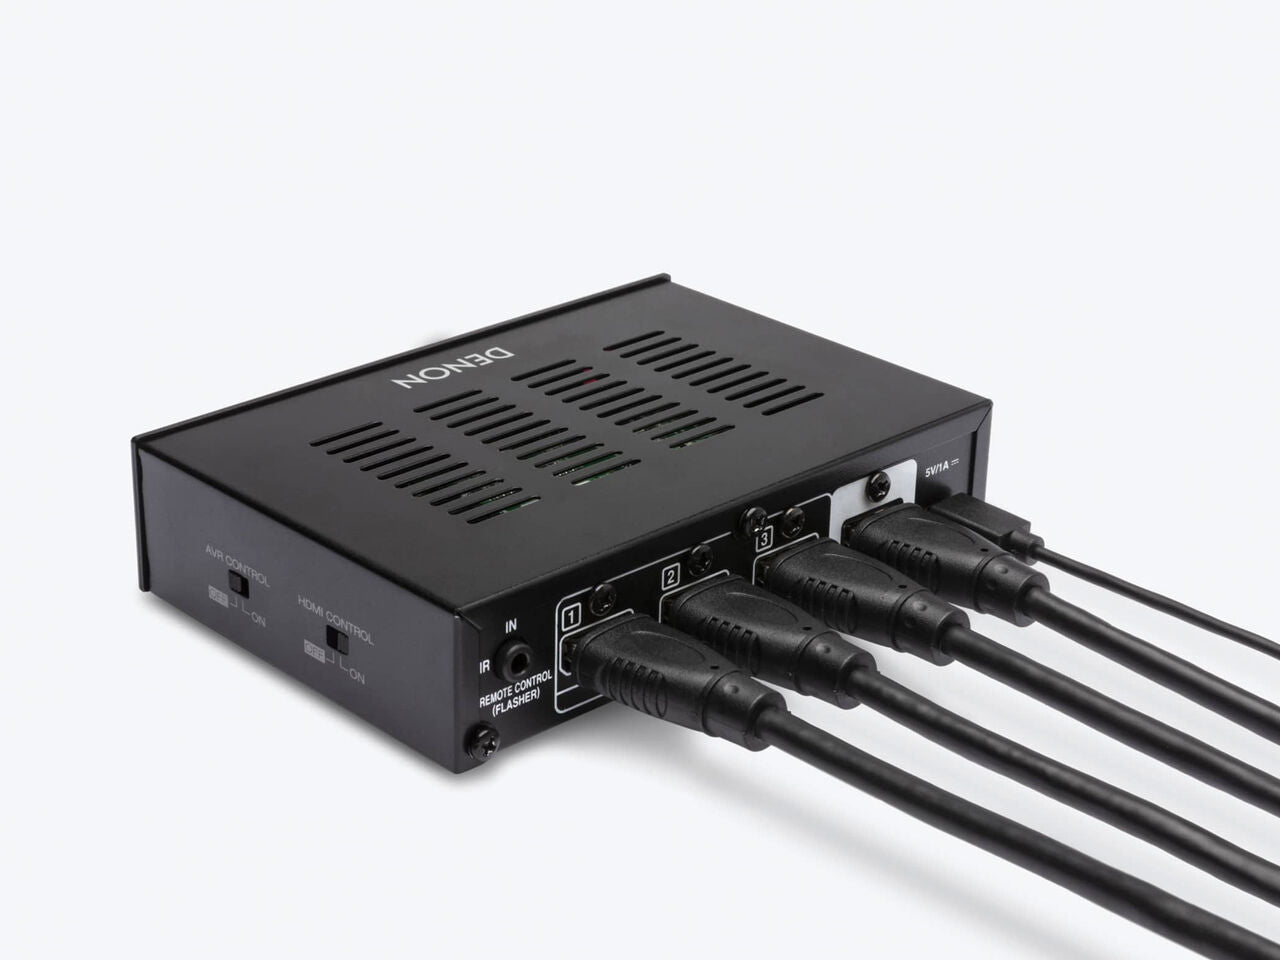 Denon AVS-3 3 In 1 Out HDMI Switcher